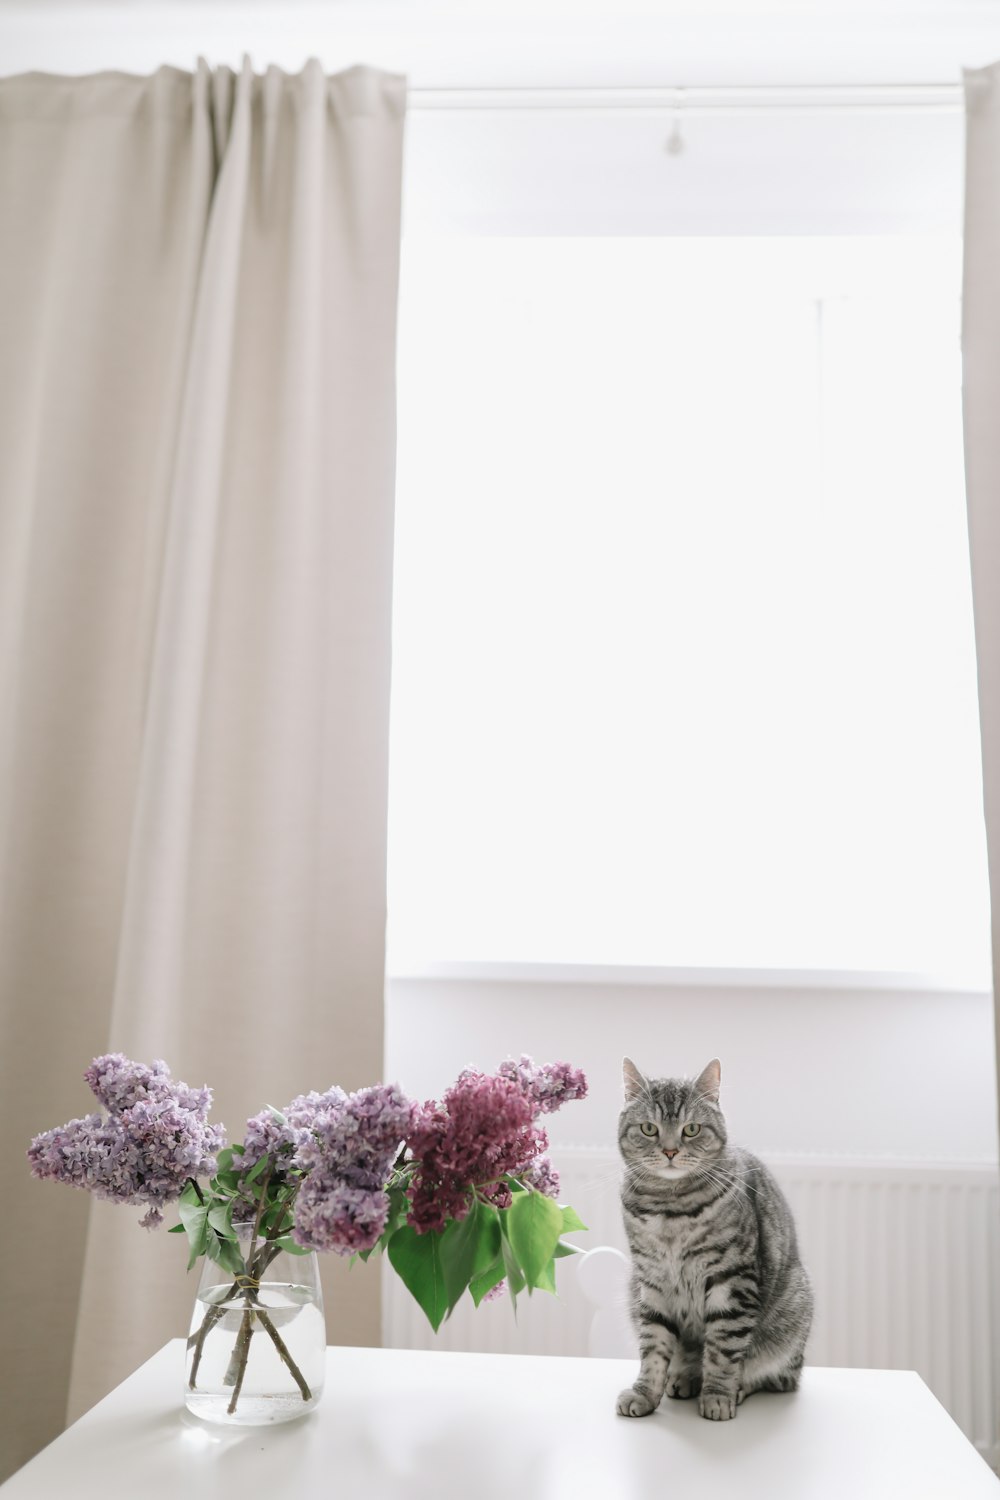 花瓶のそばに座る猫